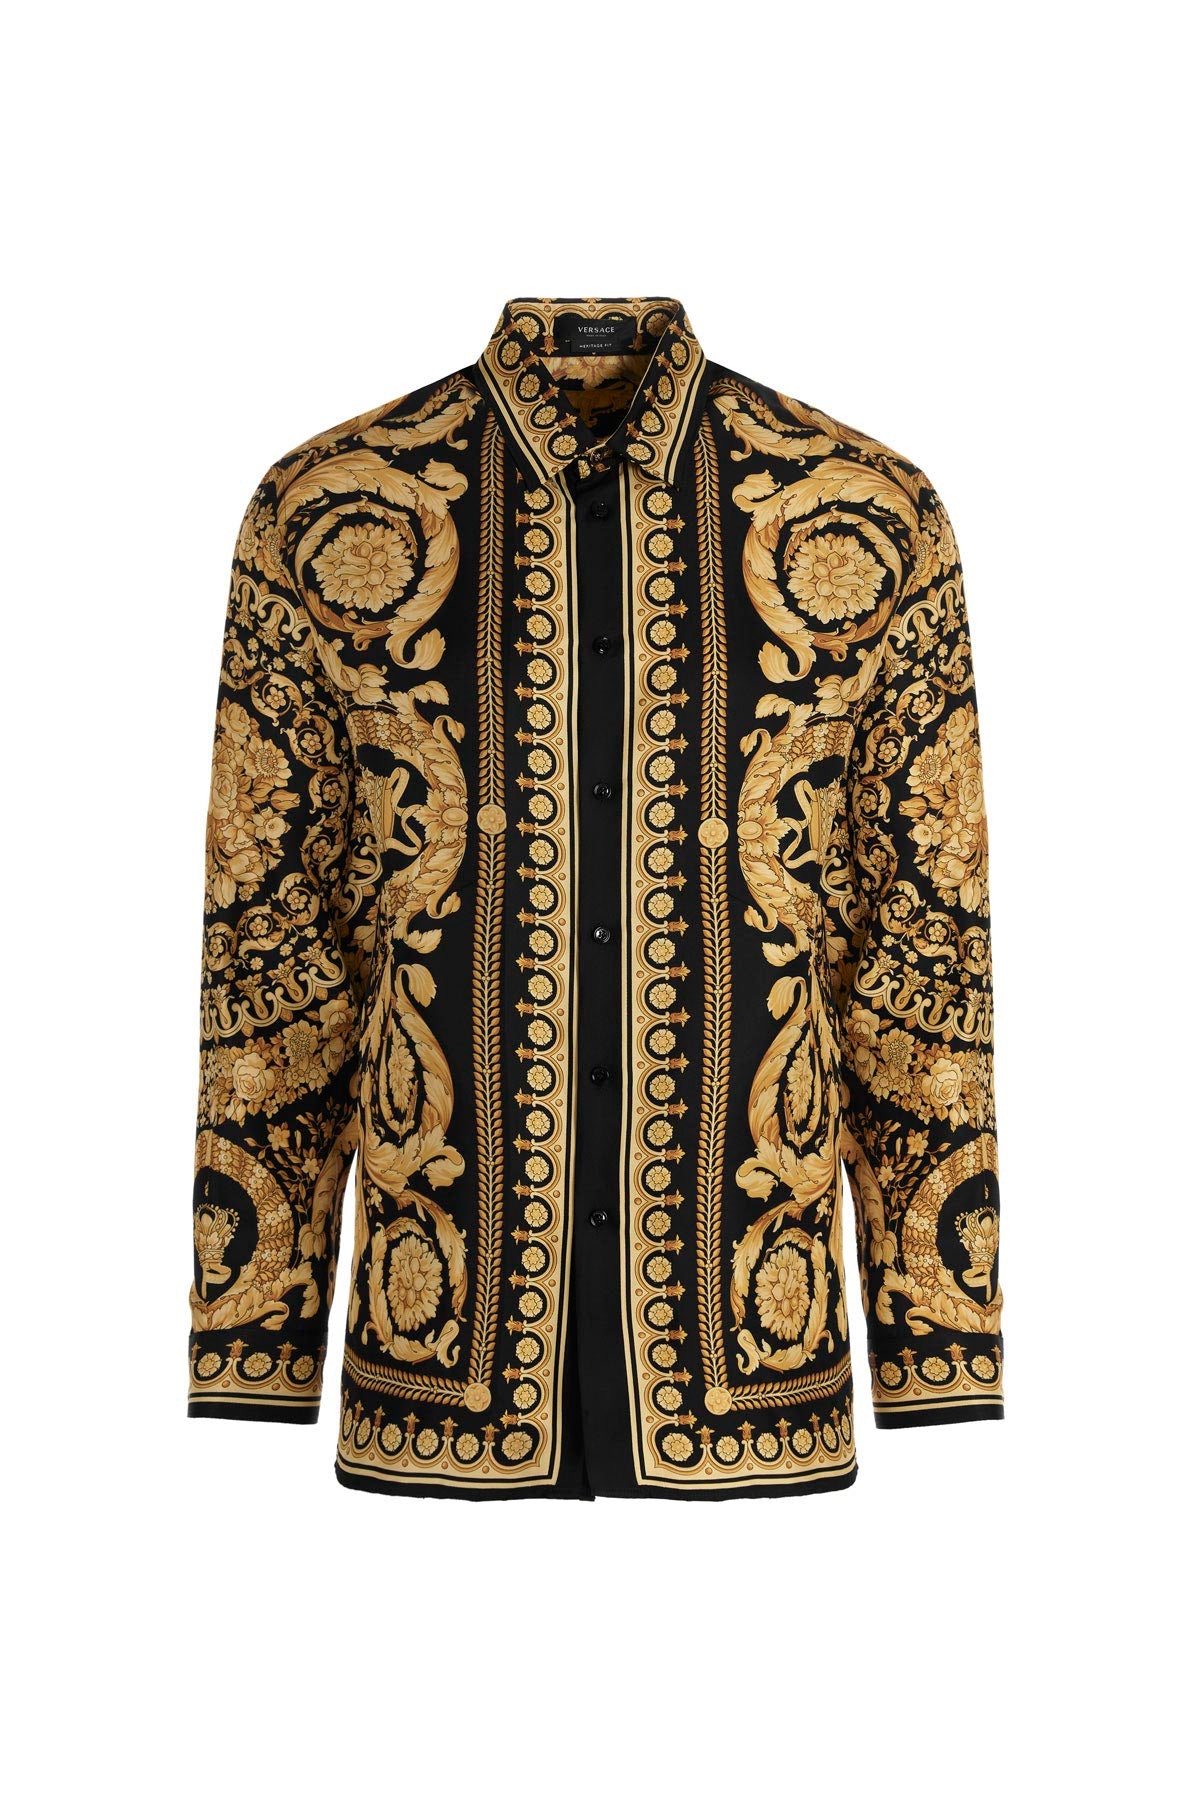 Baroccodile Silk Shirt